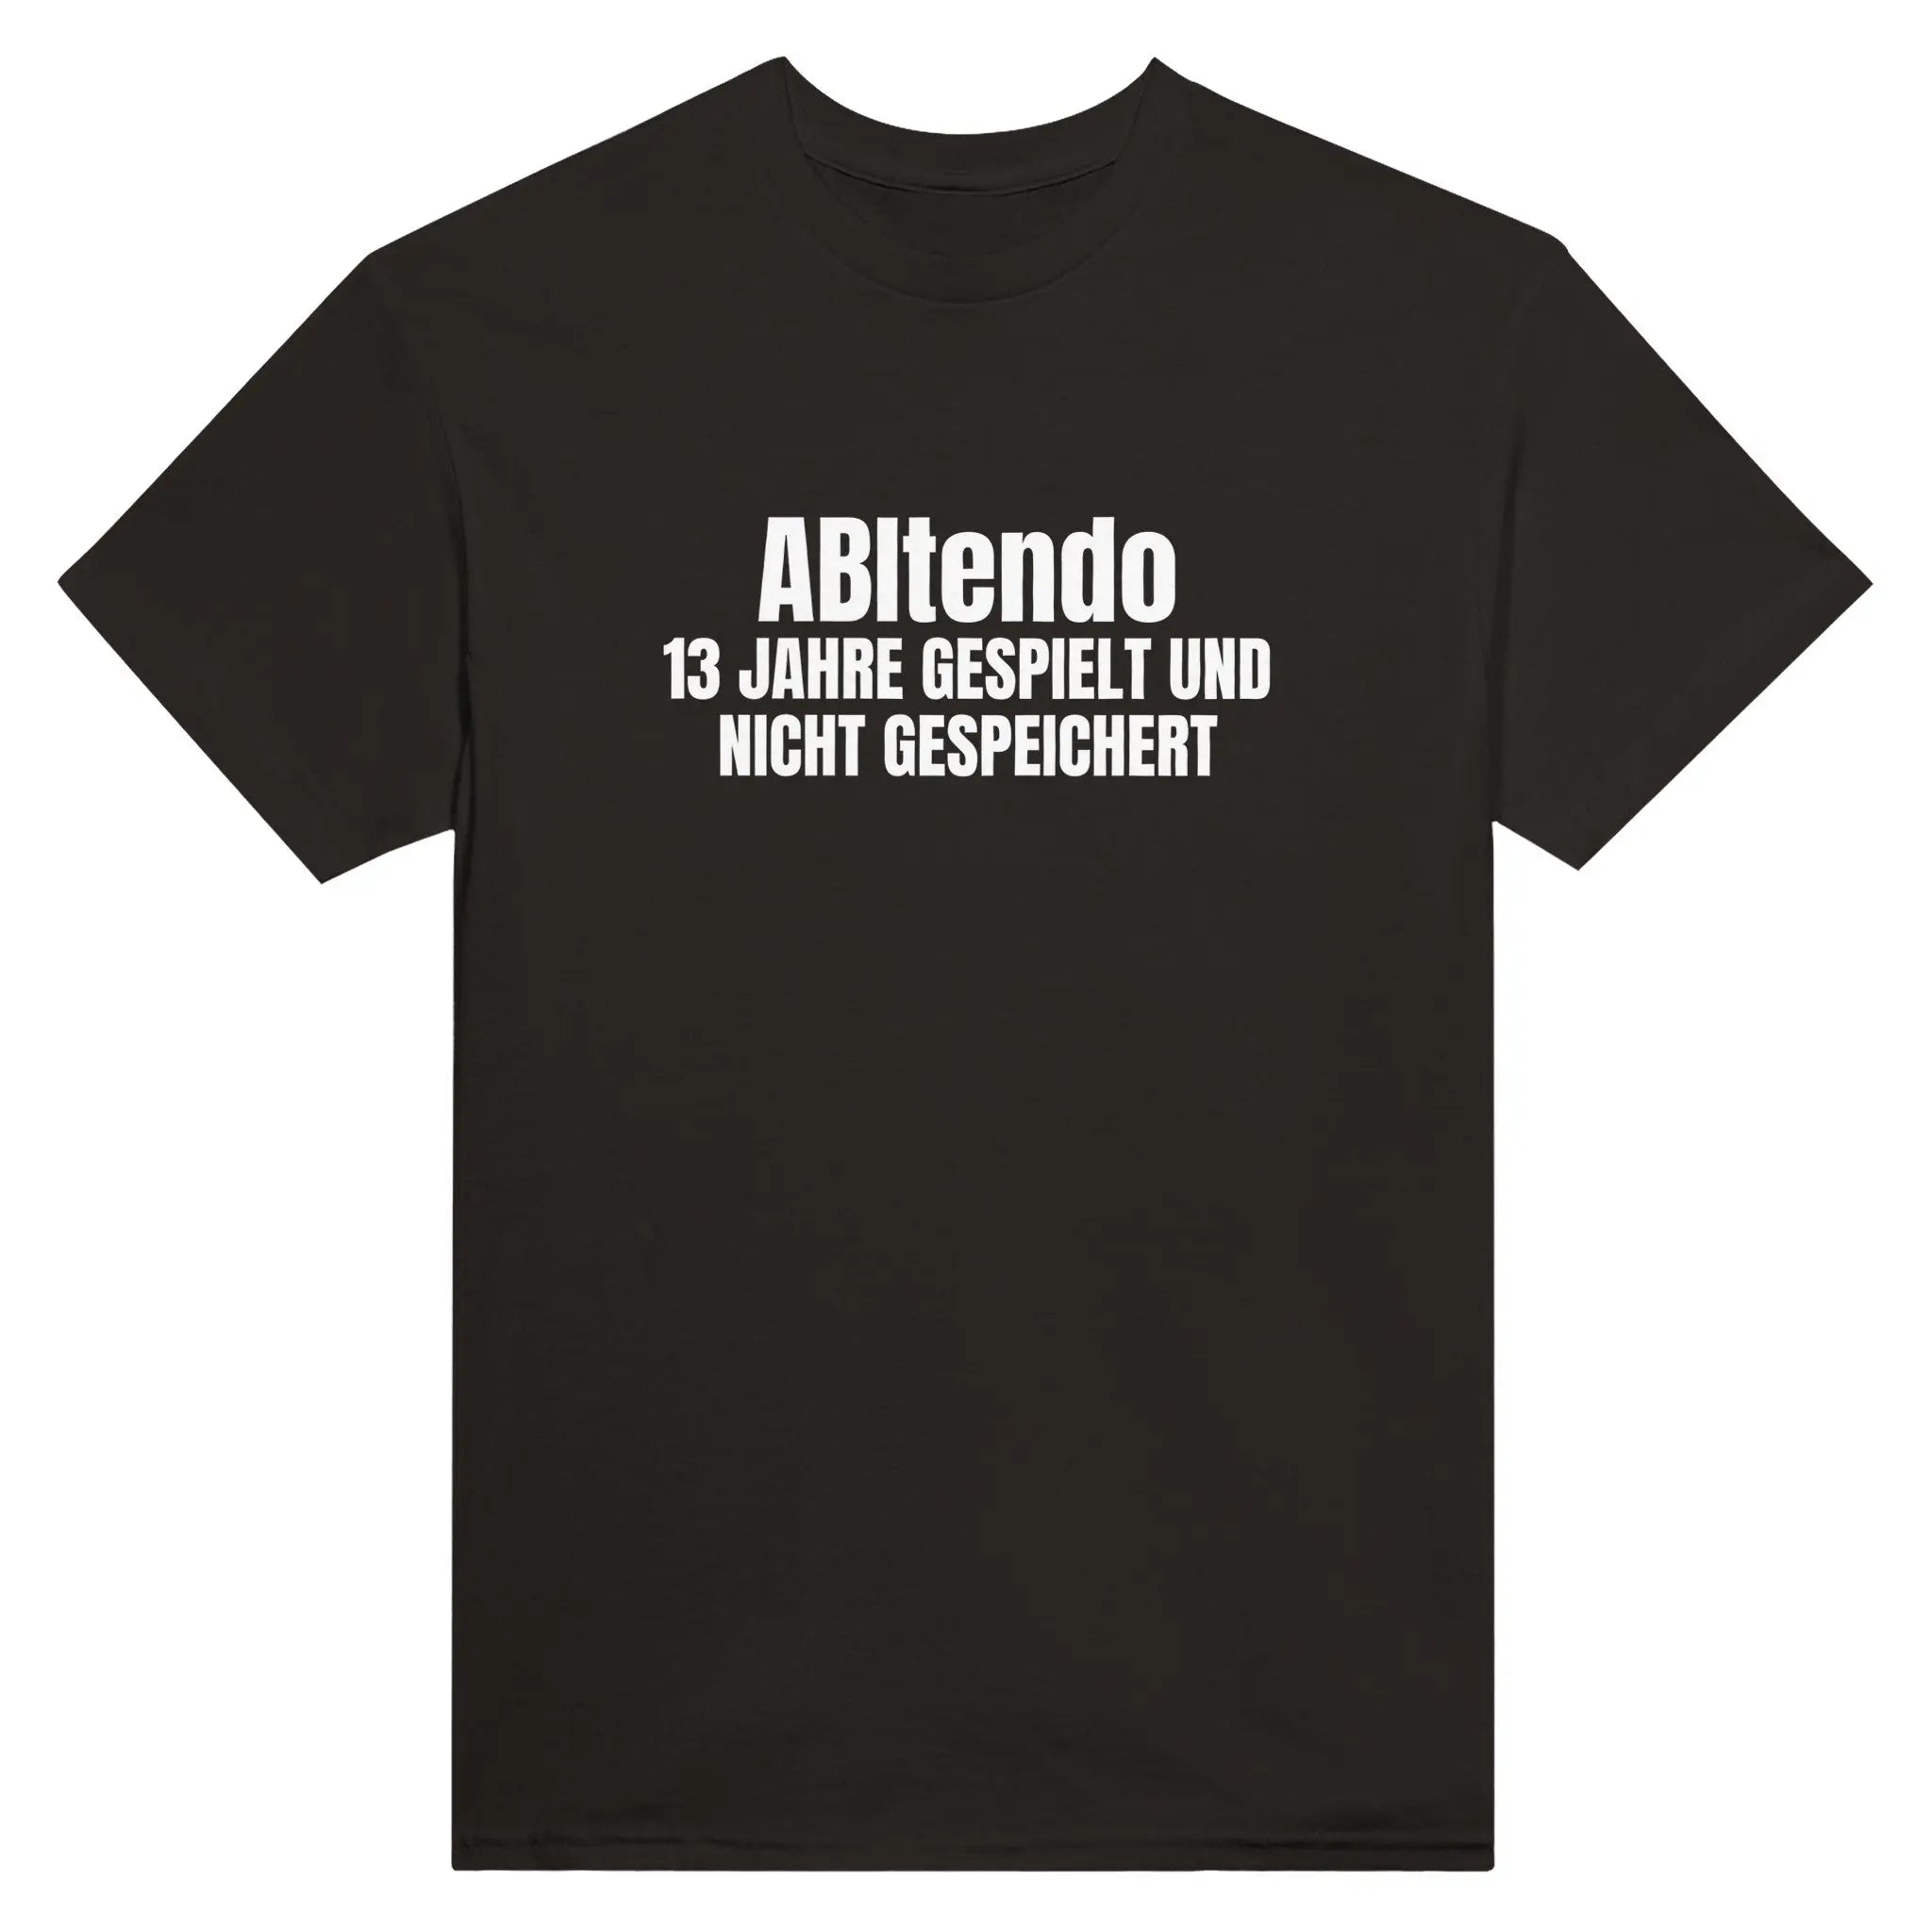 ABItendo - 13 Jahre gespielt und nicht gespeichert T-Shirt